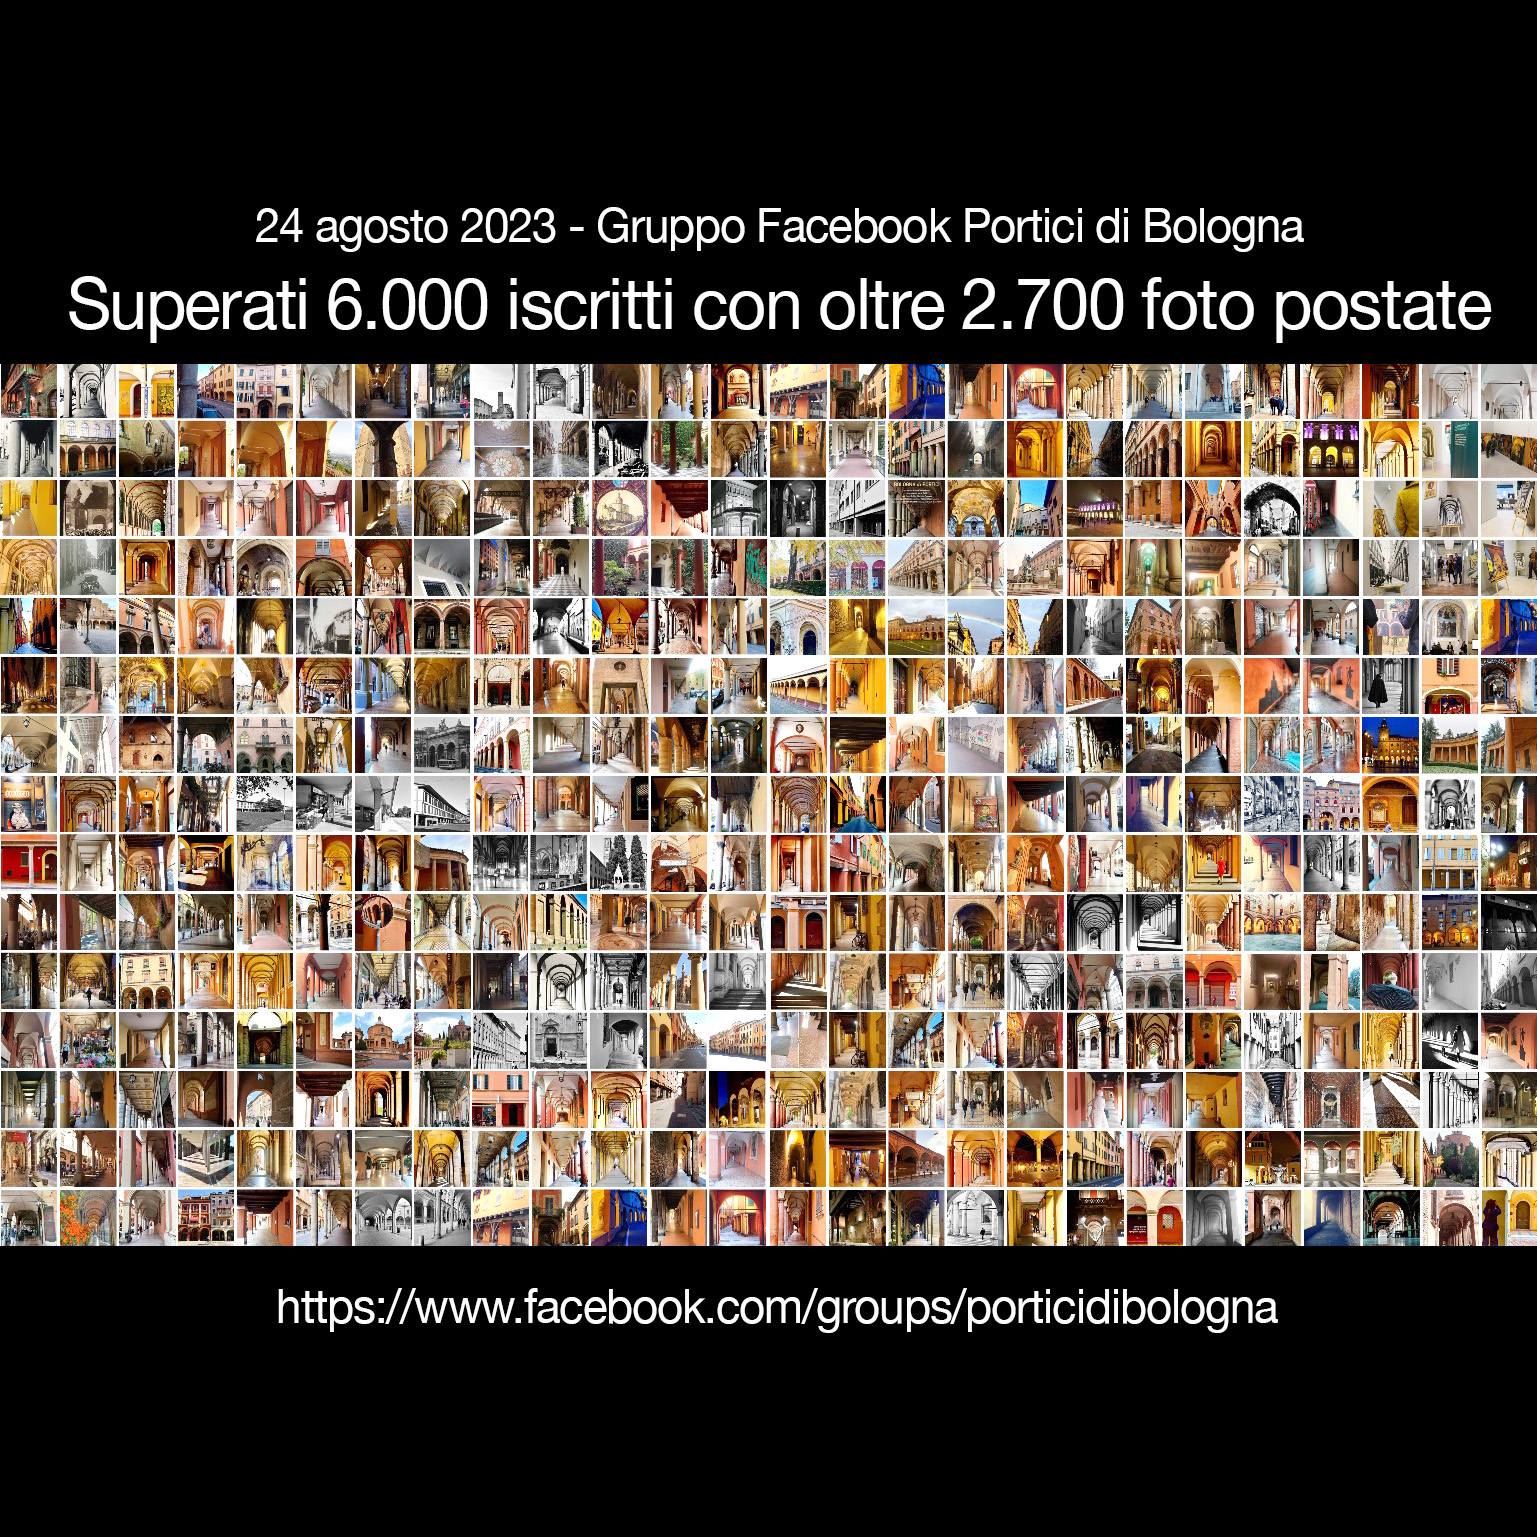 Gruppo Facebook Portici di Bologna “SUPERATI I 6.000 ISCRITTI ” con oltre 2700 foto postate